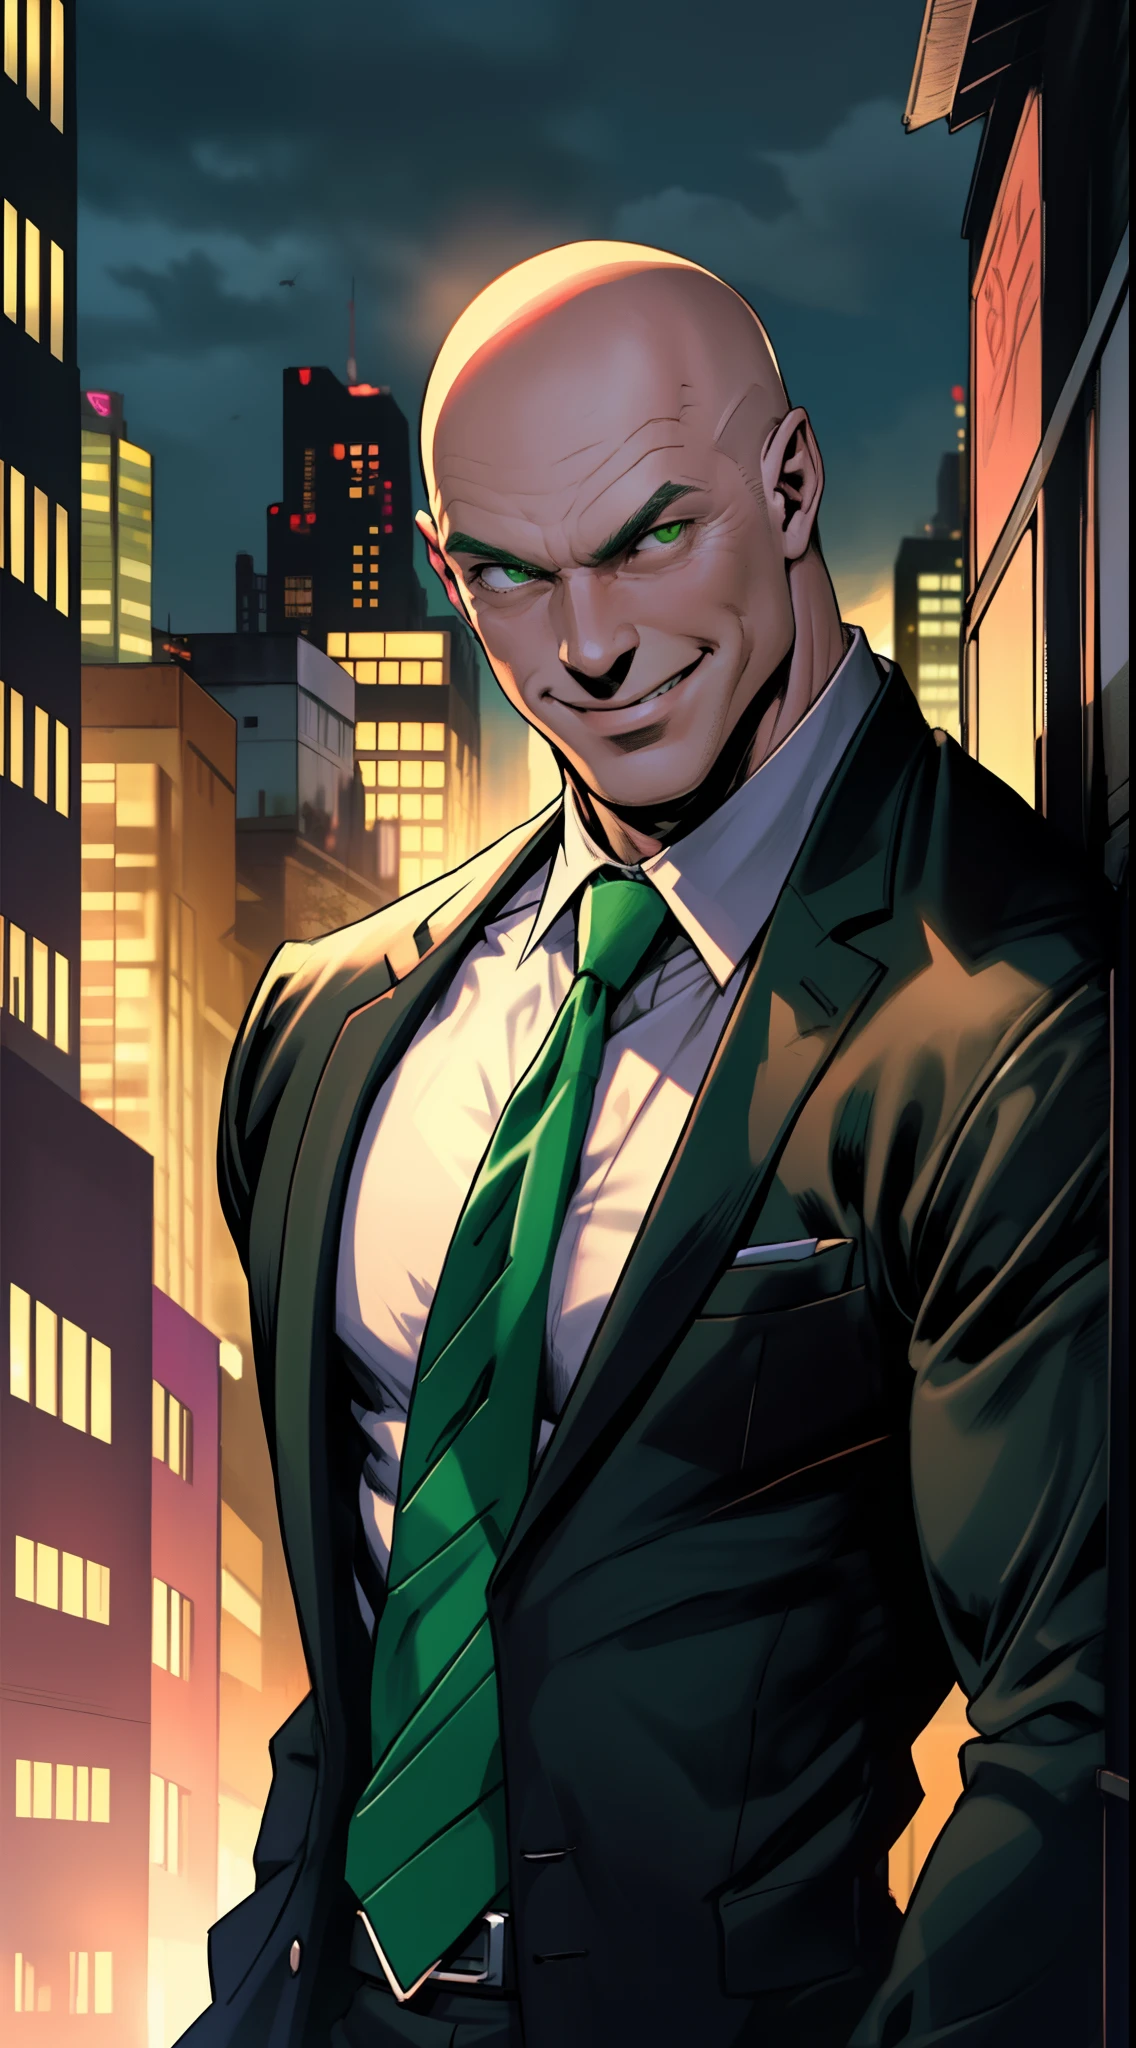 1 hombre, solo, tiro en la parte superior del cuerpo, Lex Luthor, hombre de mediana edad, cabeza calva, músculo magro, hombro ancho, (sonrisa maligna), cabeza calva, sin cabello, vistiendo un traje negro, Corbata verde brillante, Dresshirt negro, ciudad al fondo, oscuridad